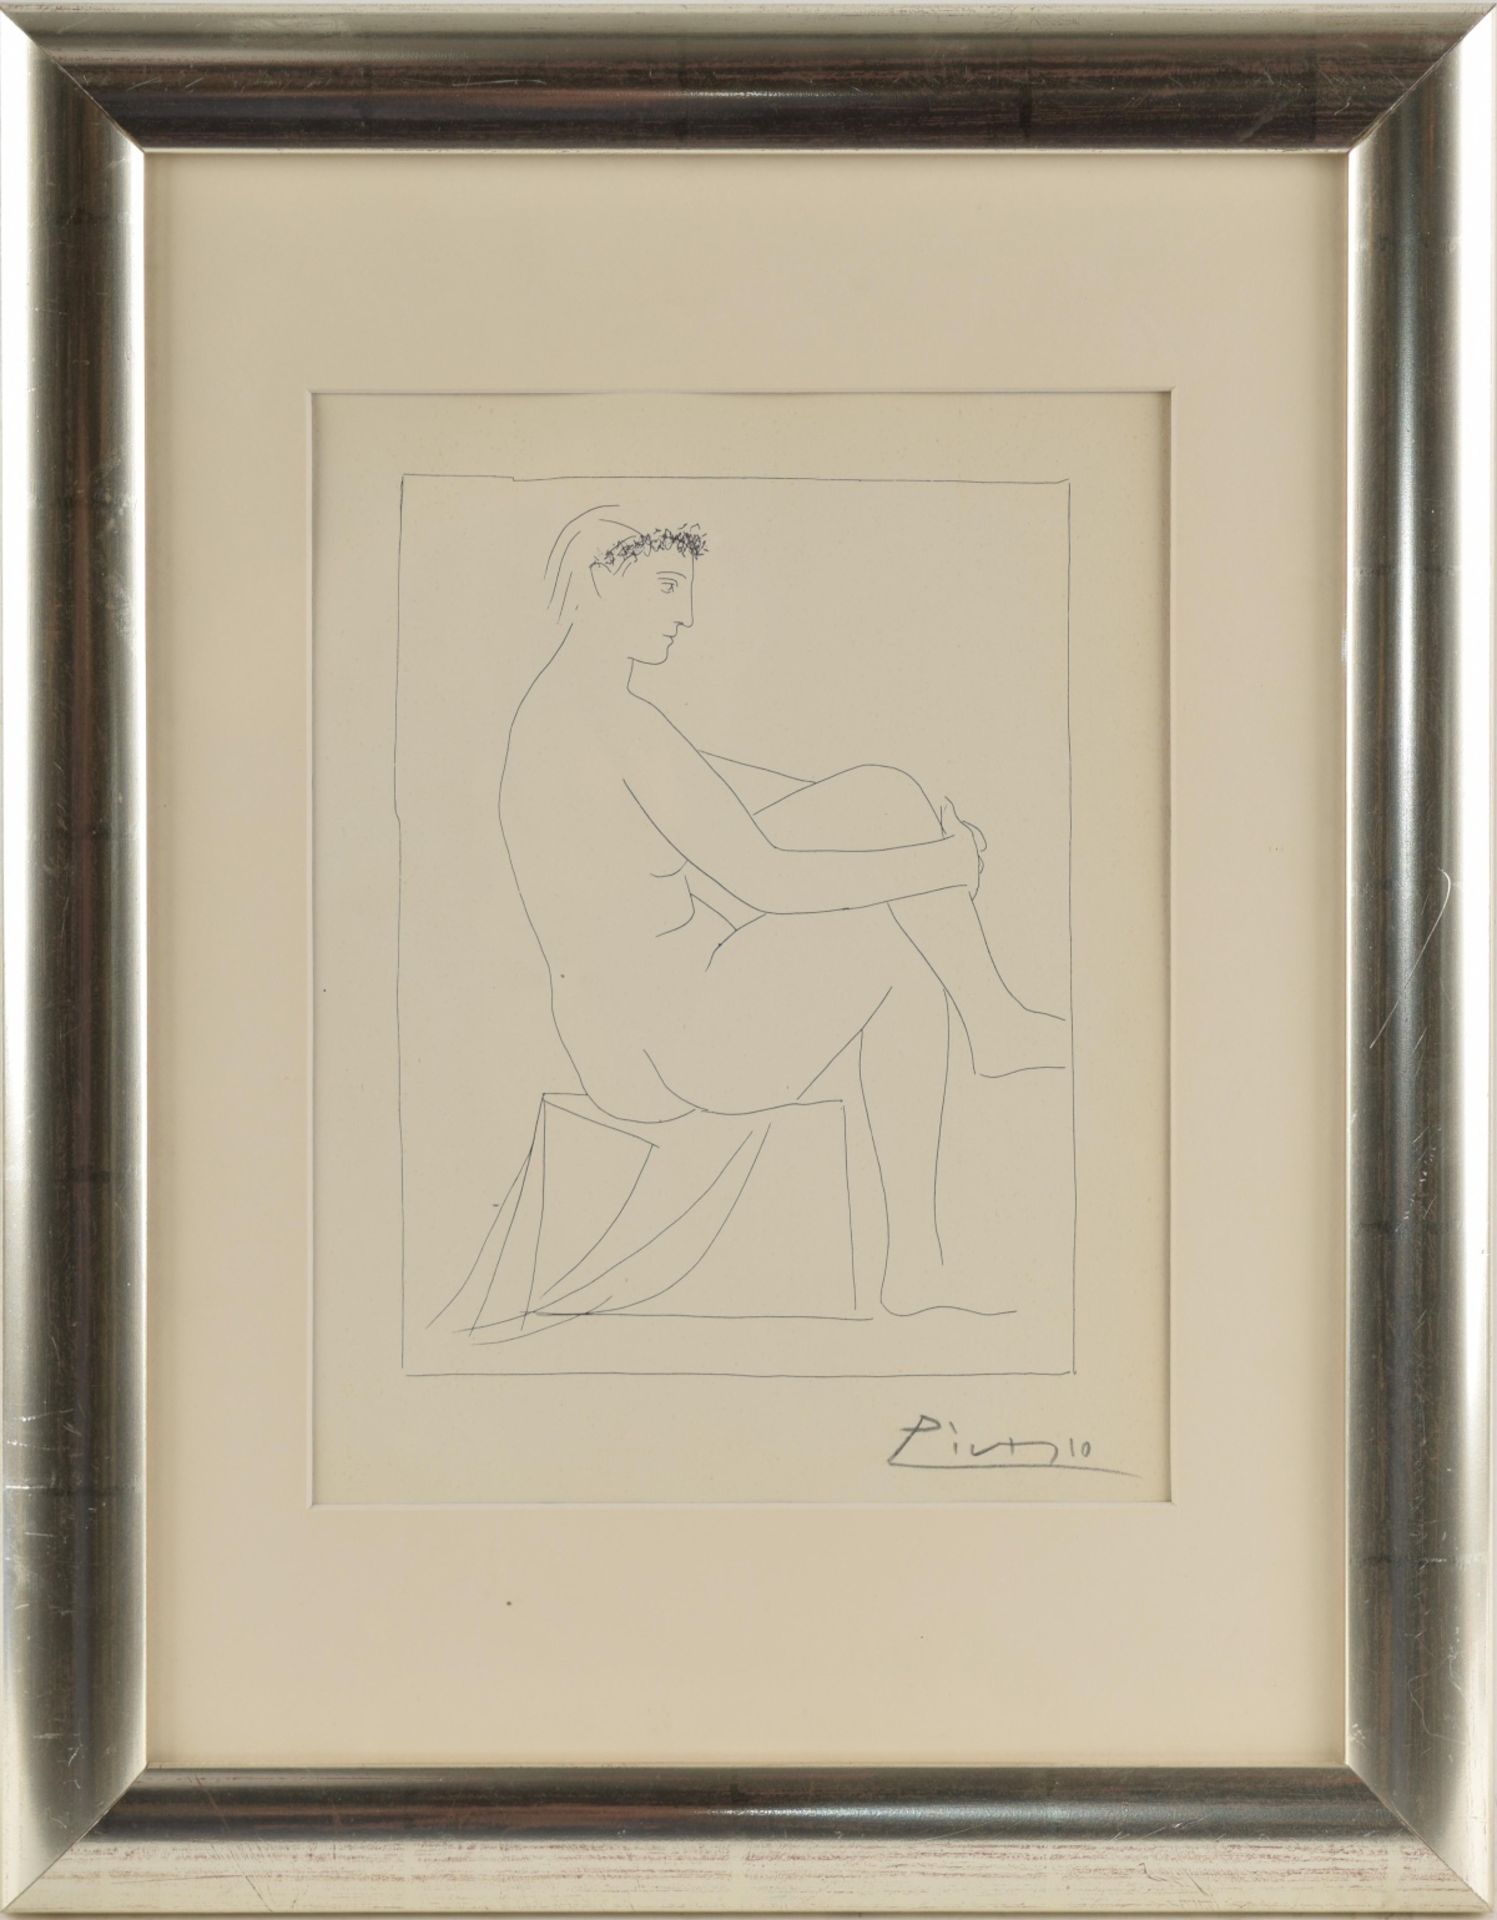 Picasso, Pablo (nach) Lithografie, weiblicher Akt, Suite Vollard, unten von fremder Hand bezeichnet, - Bild 3 aus 4